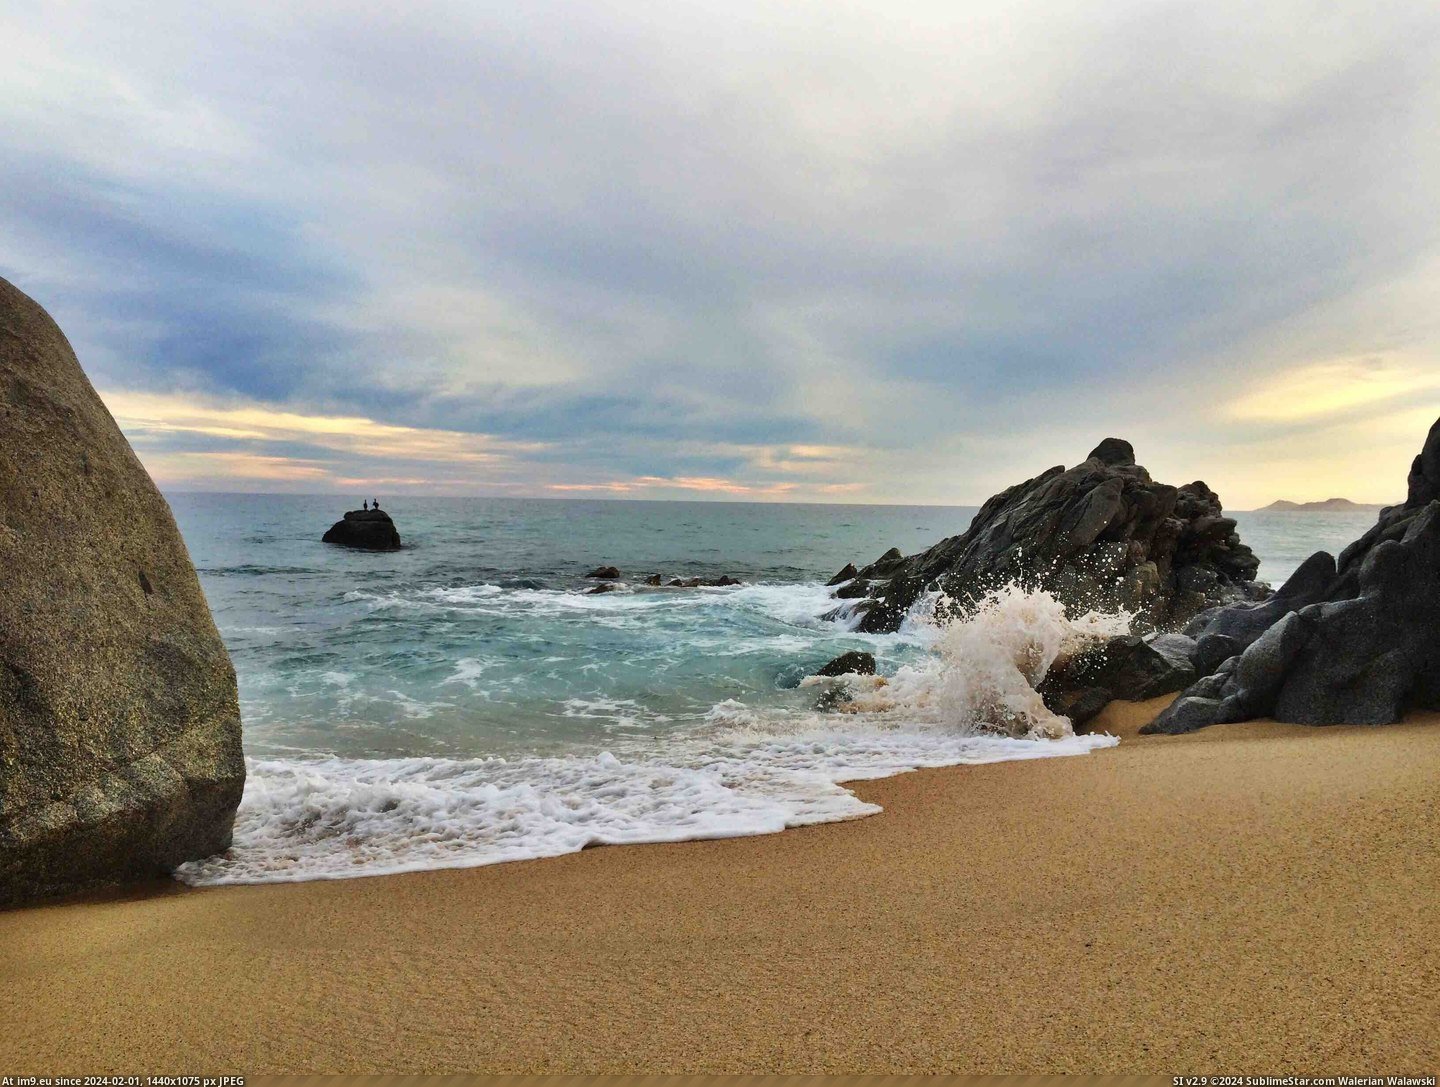 #Beach #San #Mexico #Remote #3264x2448 #Del [Earthporn] Remote beach outside of San José del Cabo, Mexico. [3264x2448] Pic. (Obraz z album My r/EARTHPORN favs))